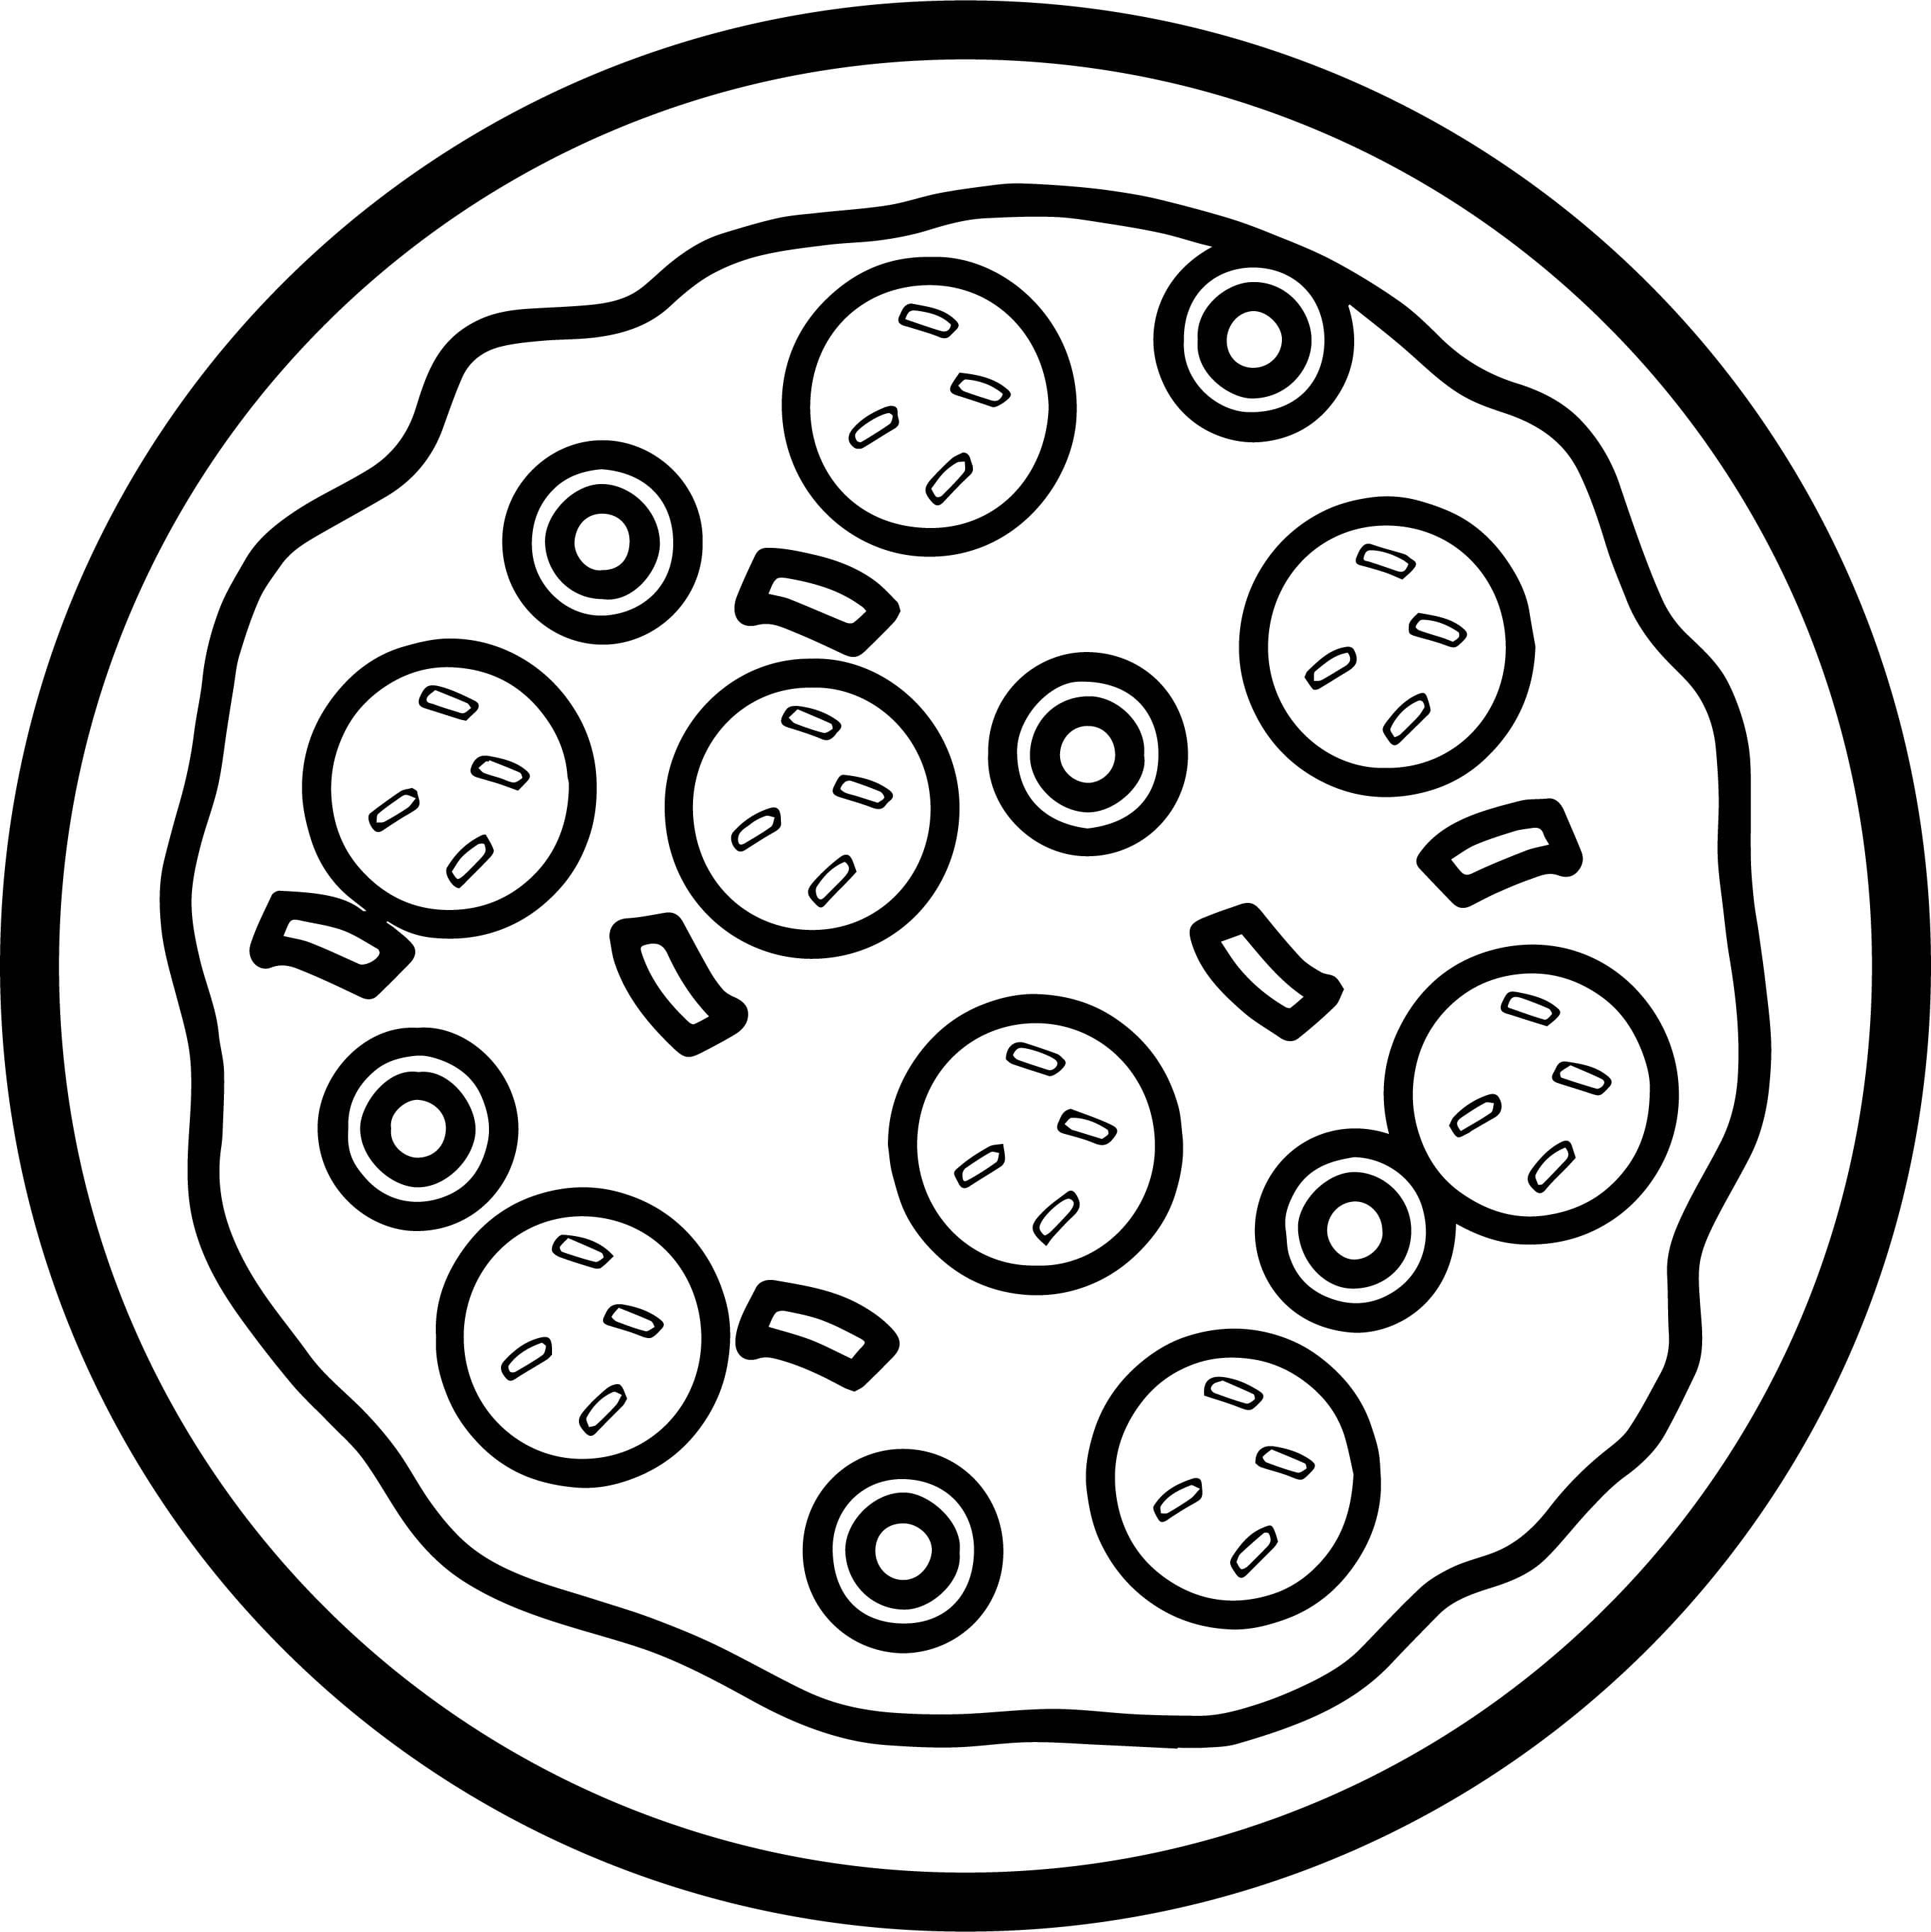 Disegni Di Pizza Da Colorare 100 Immagini Per La Stampa Gratuita